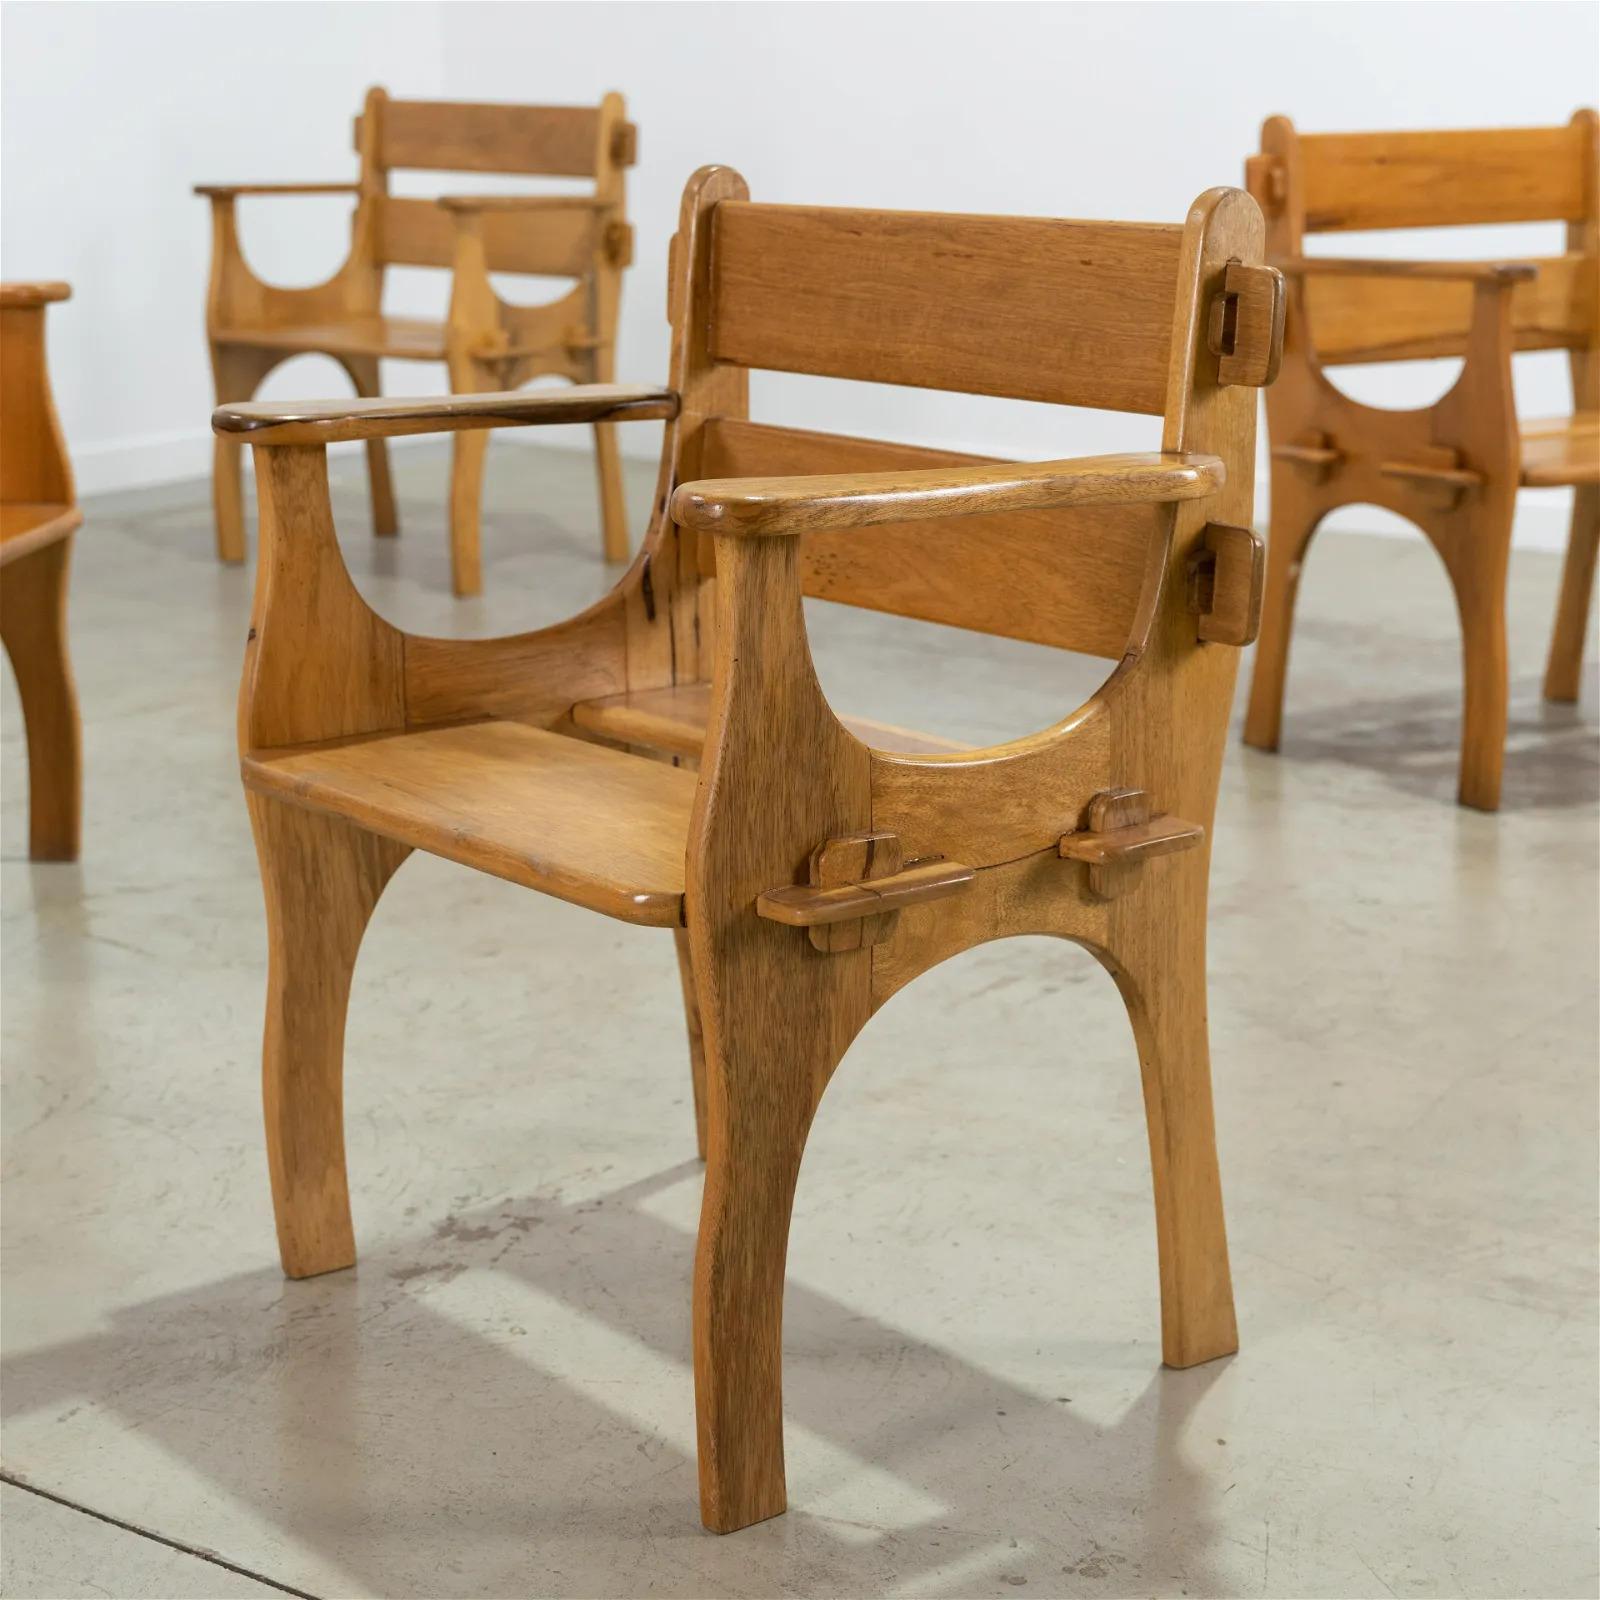 Ensemble de quatre fauteuils brésiliens des années 1950. Les chaises sont très bien construites. Les chaises ont leur finition d'origine.